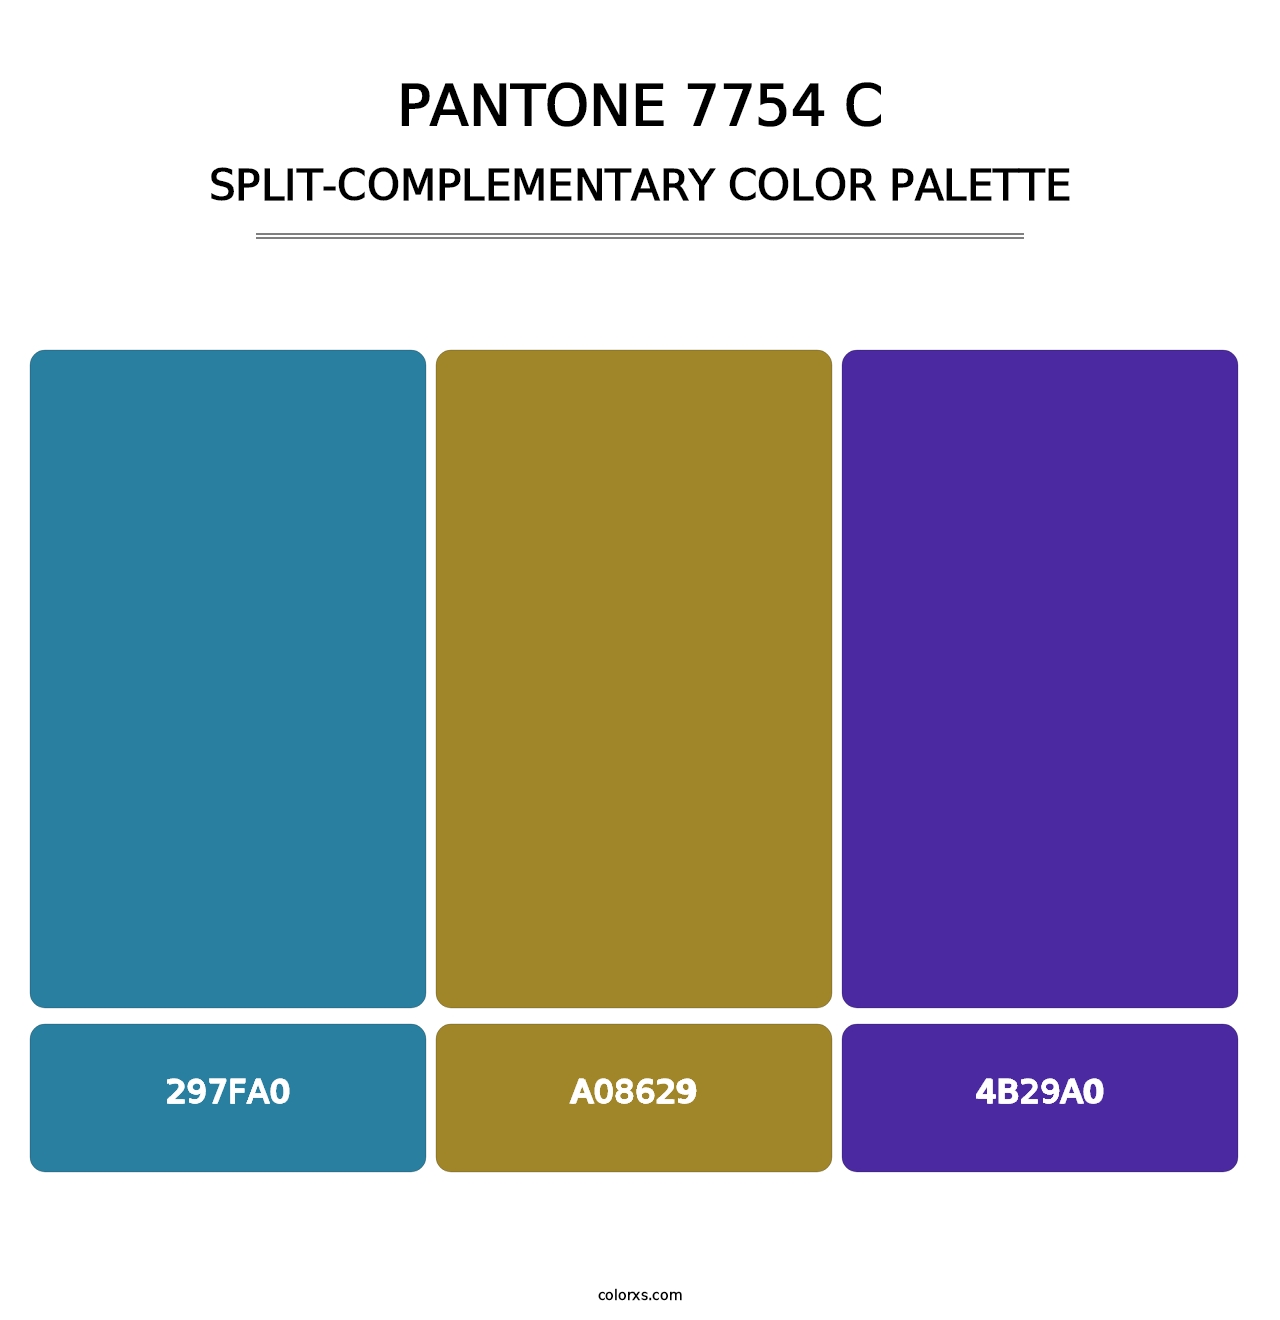 PANTONE 7754 C - Split-Complementary Color Palette